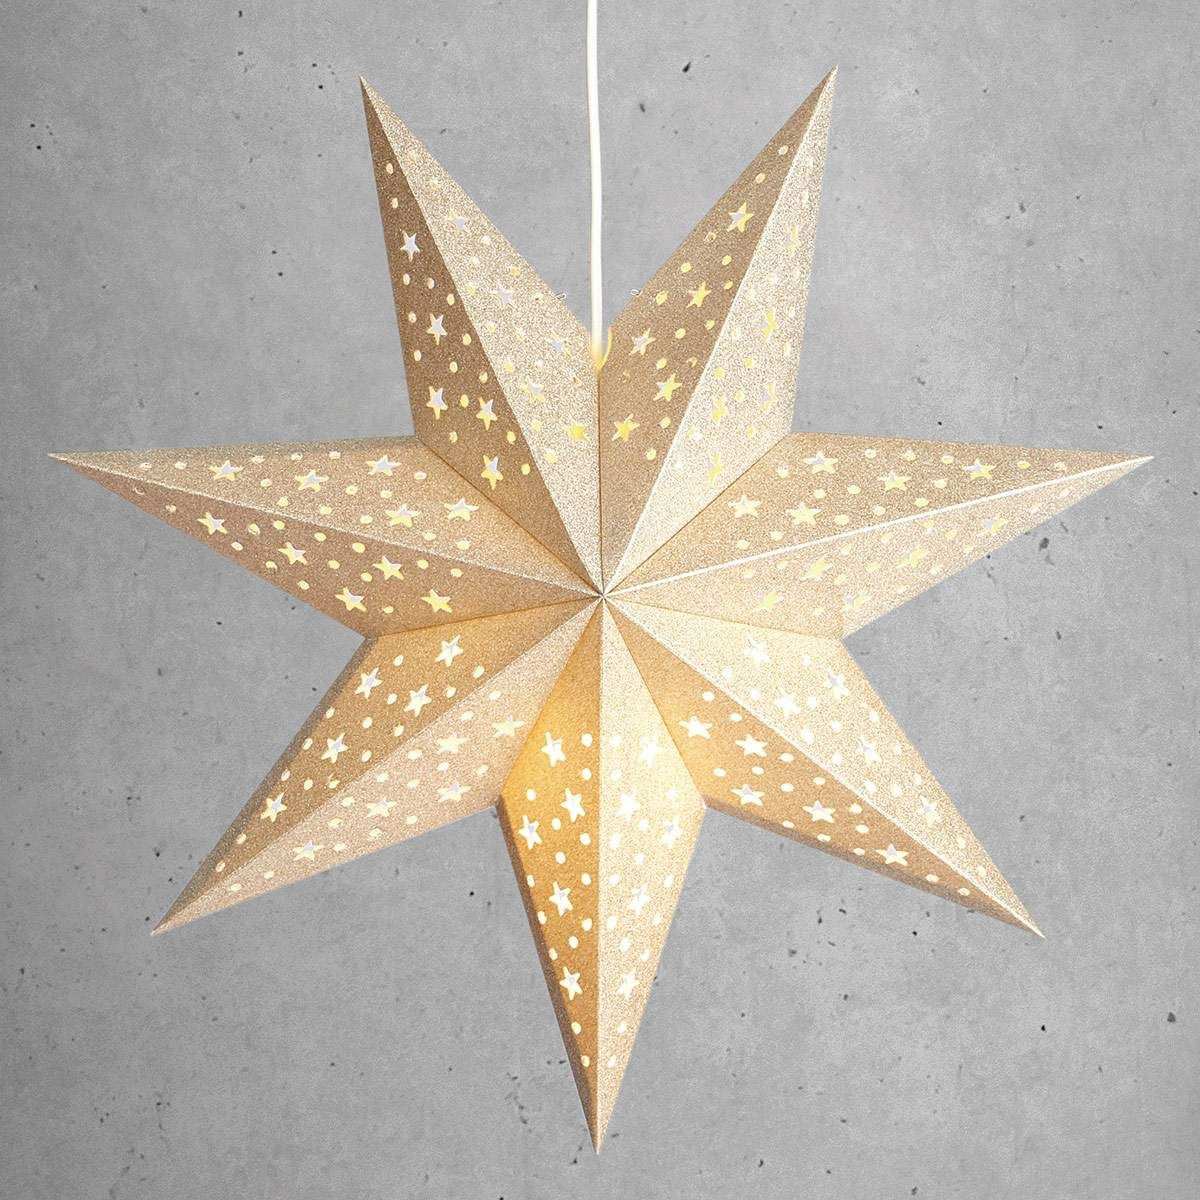 Pin Von Marli Neves De Amaral Auf Sterne Papiersterne Sterne Licht Einschalten